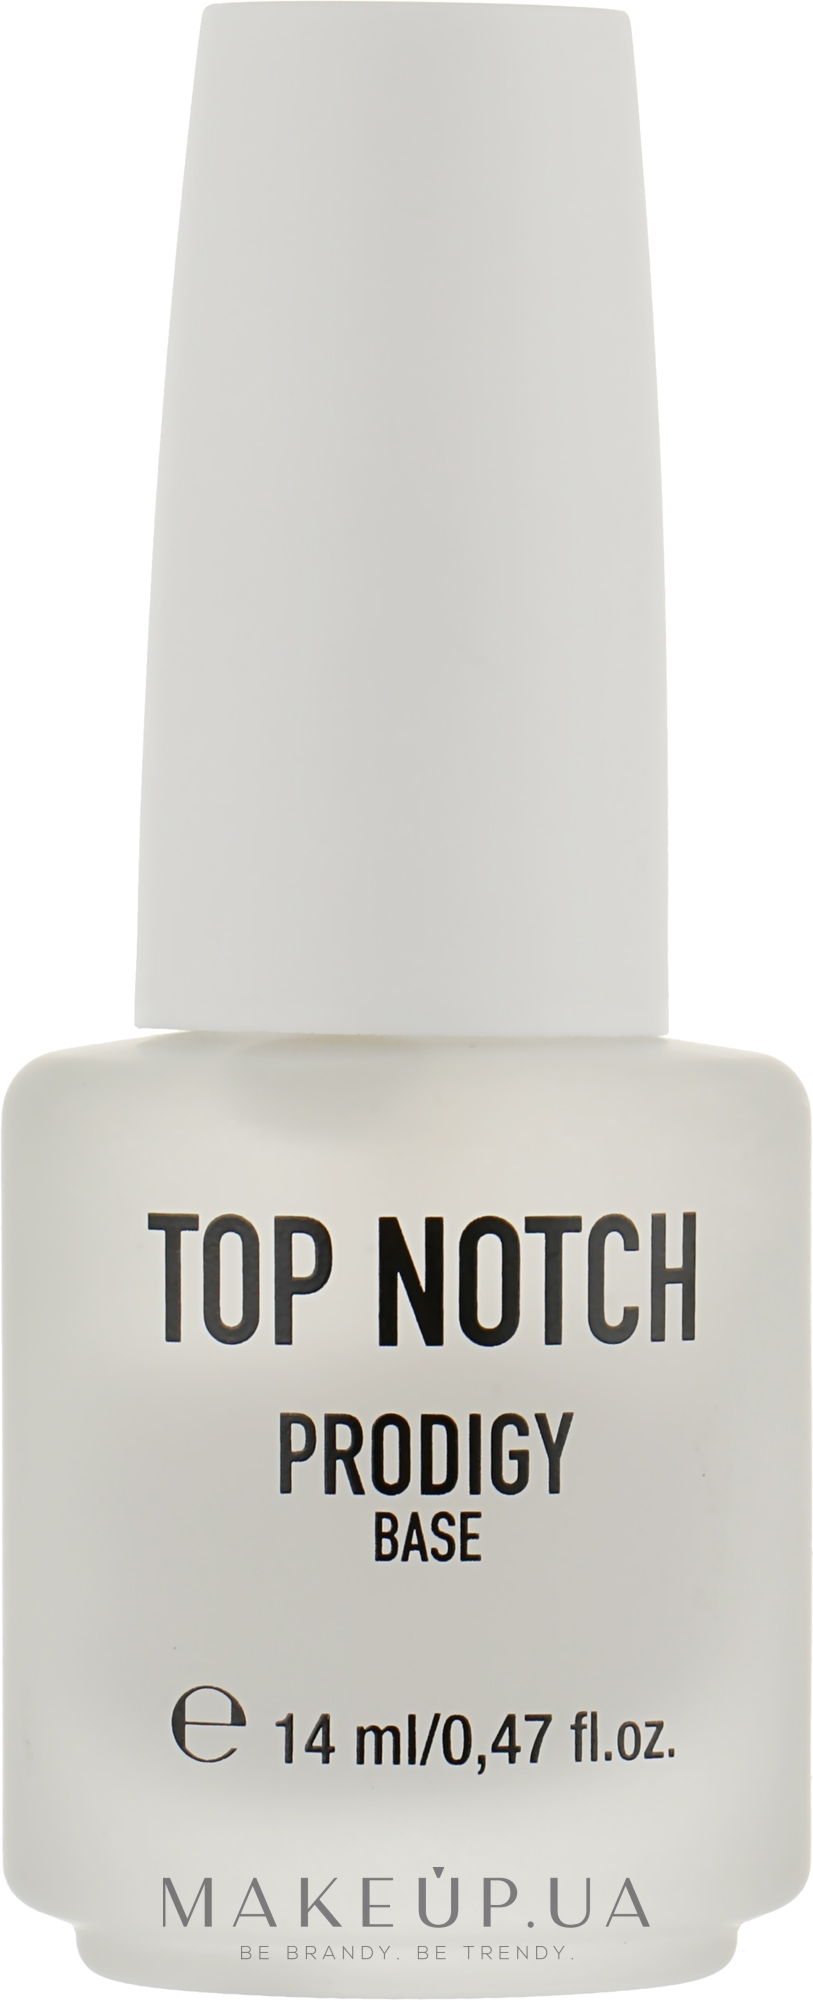 Базовое покрытие для ногтей - Top Notch Prodigy Base — фото 14ml